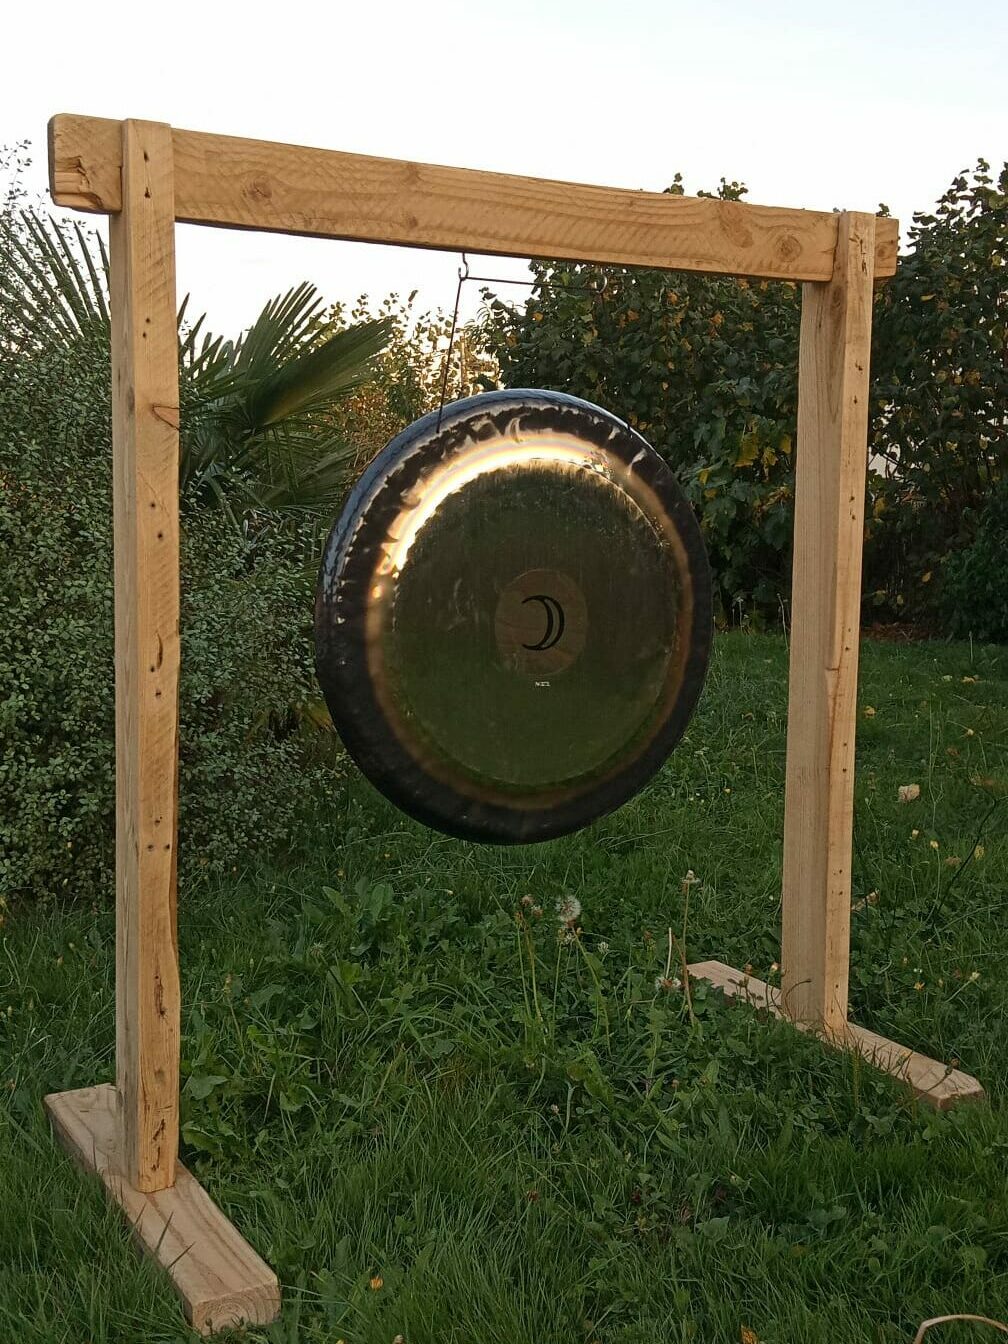 Un gong, instrument remarquable pour les bains, voyages sonores à Graine et Plénitude, Quistinic, Morbihan